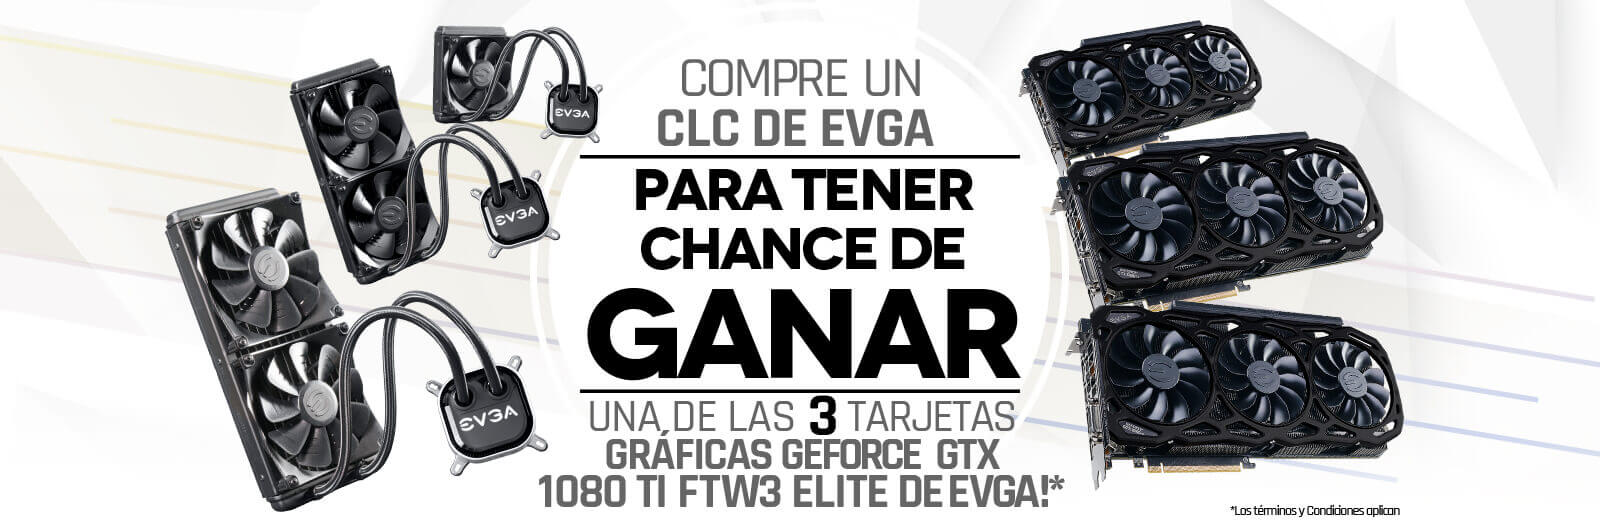 Compre un CLC de EVGA Para Tener Chance de Ganar una de las 3 Tarjetas Gráficas GeForce GTX 1080 Ti FTW3 ELITE de EVGA